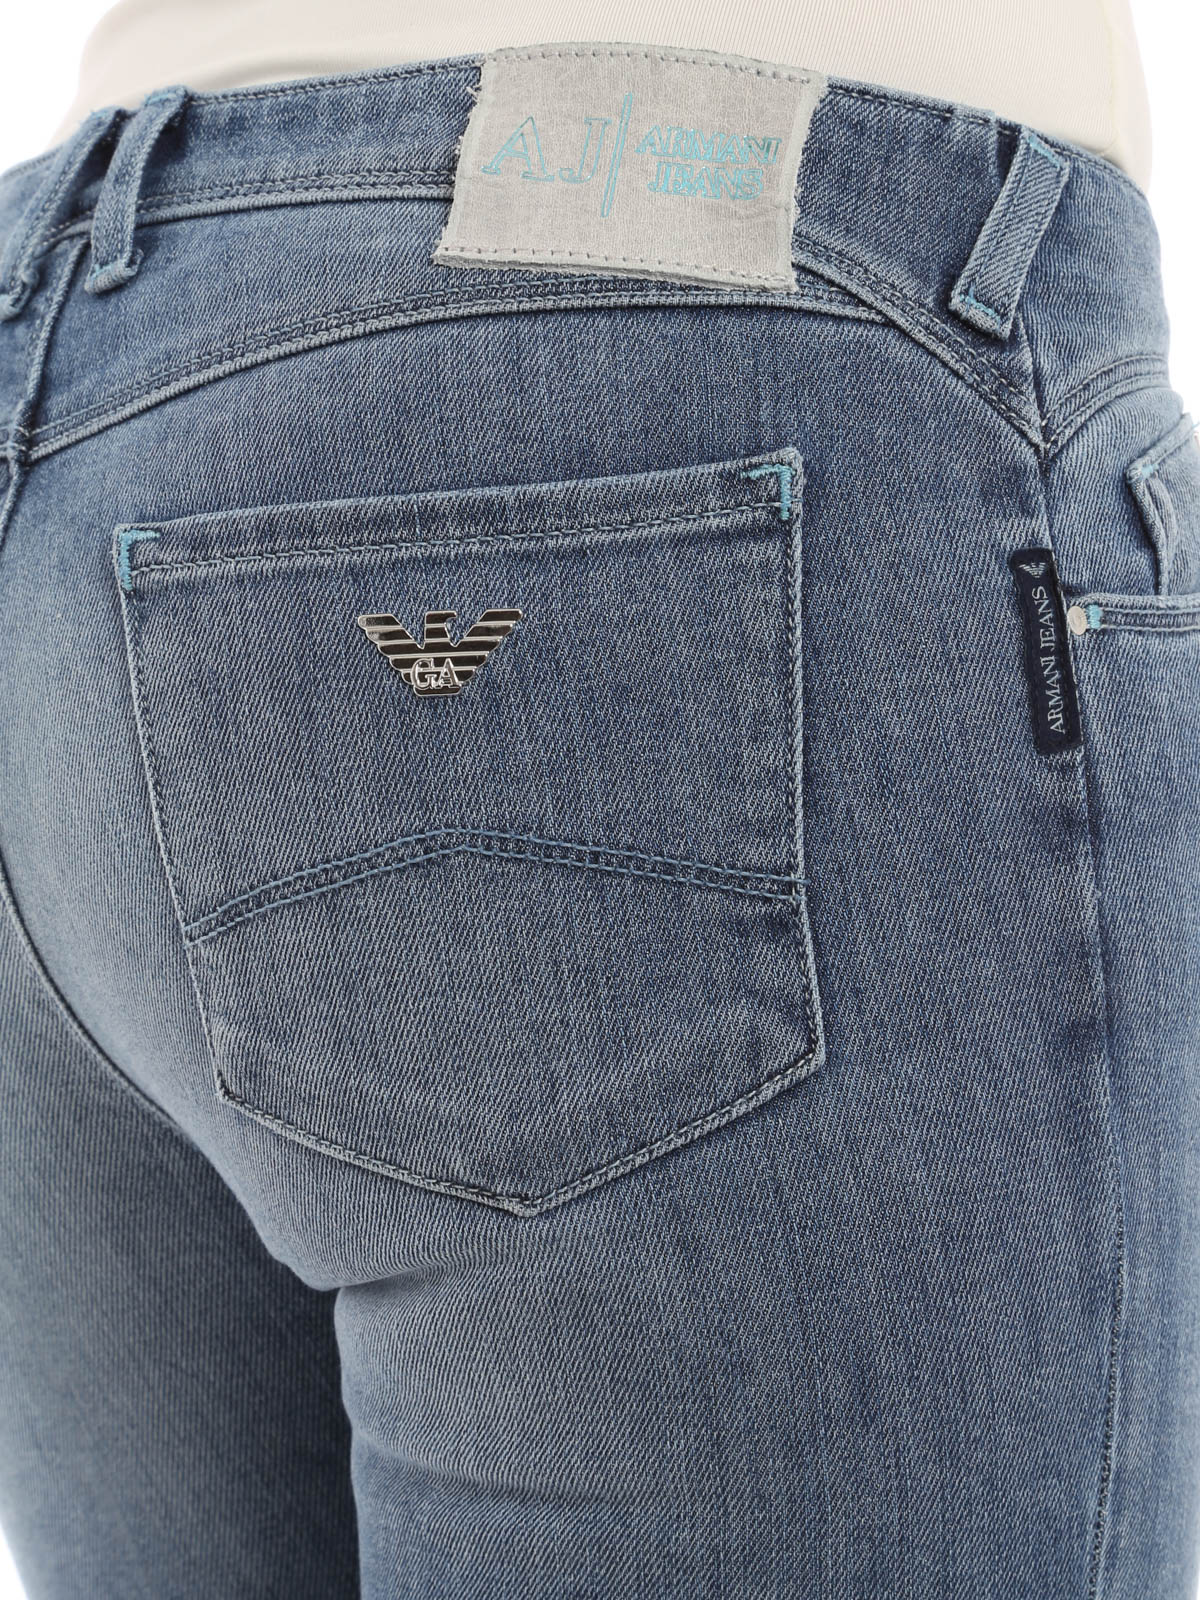 Jeans pitillos Jeans - Orchid jeans - C5J18G41515 | iKRIX.com